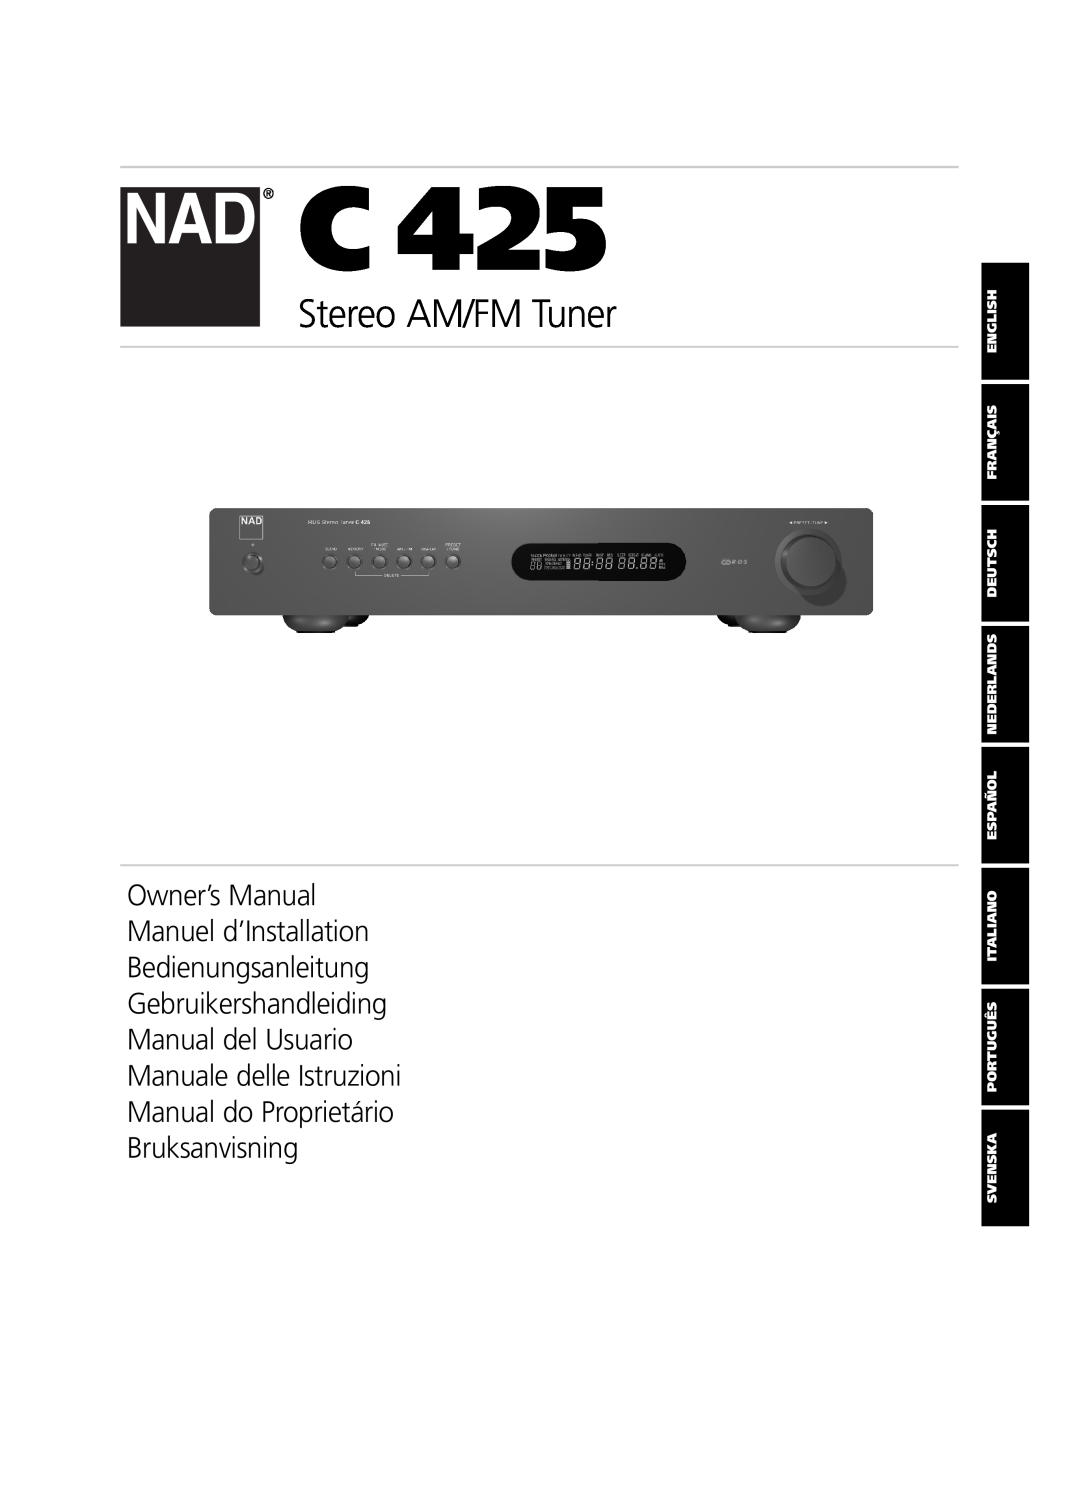 NAD C 425 owner manual Stereo AM/FM Tuner, Bedienungsanleitung Gebruikershandleiding 